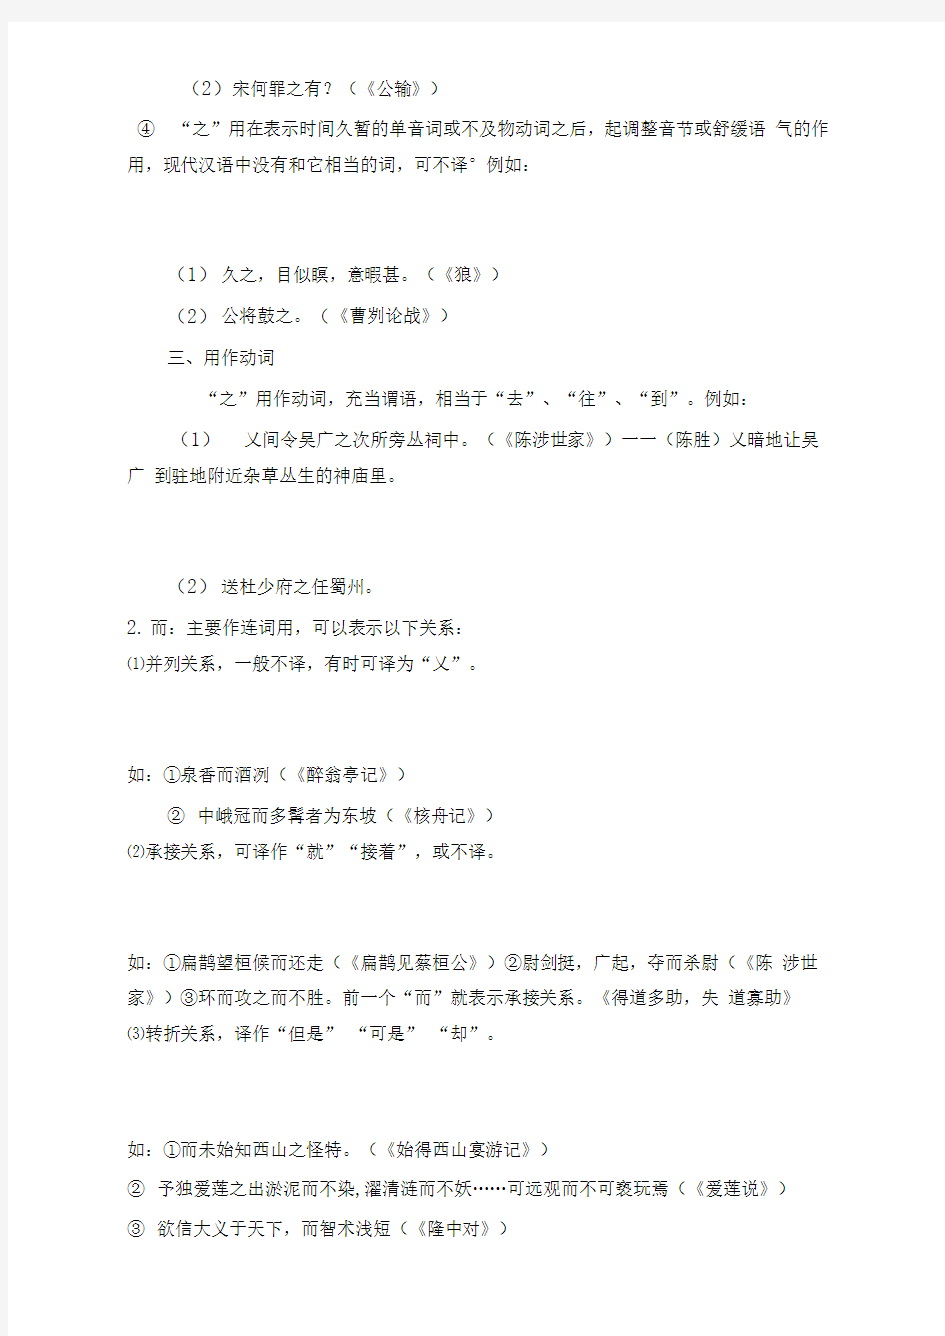 初中语文常见六个文言虚词用法归纳